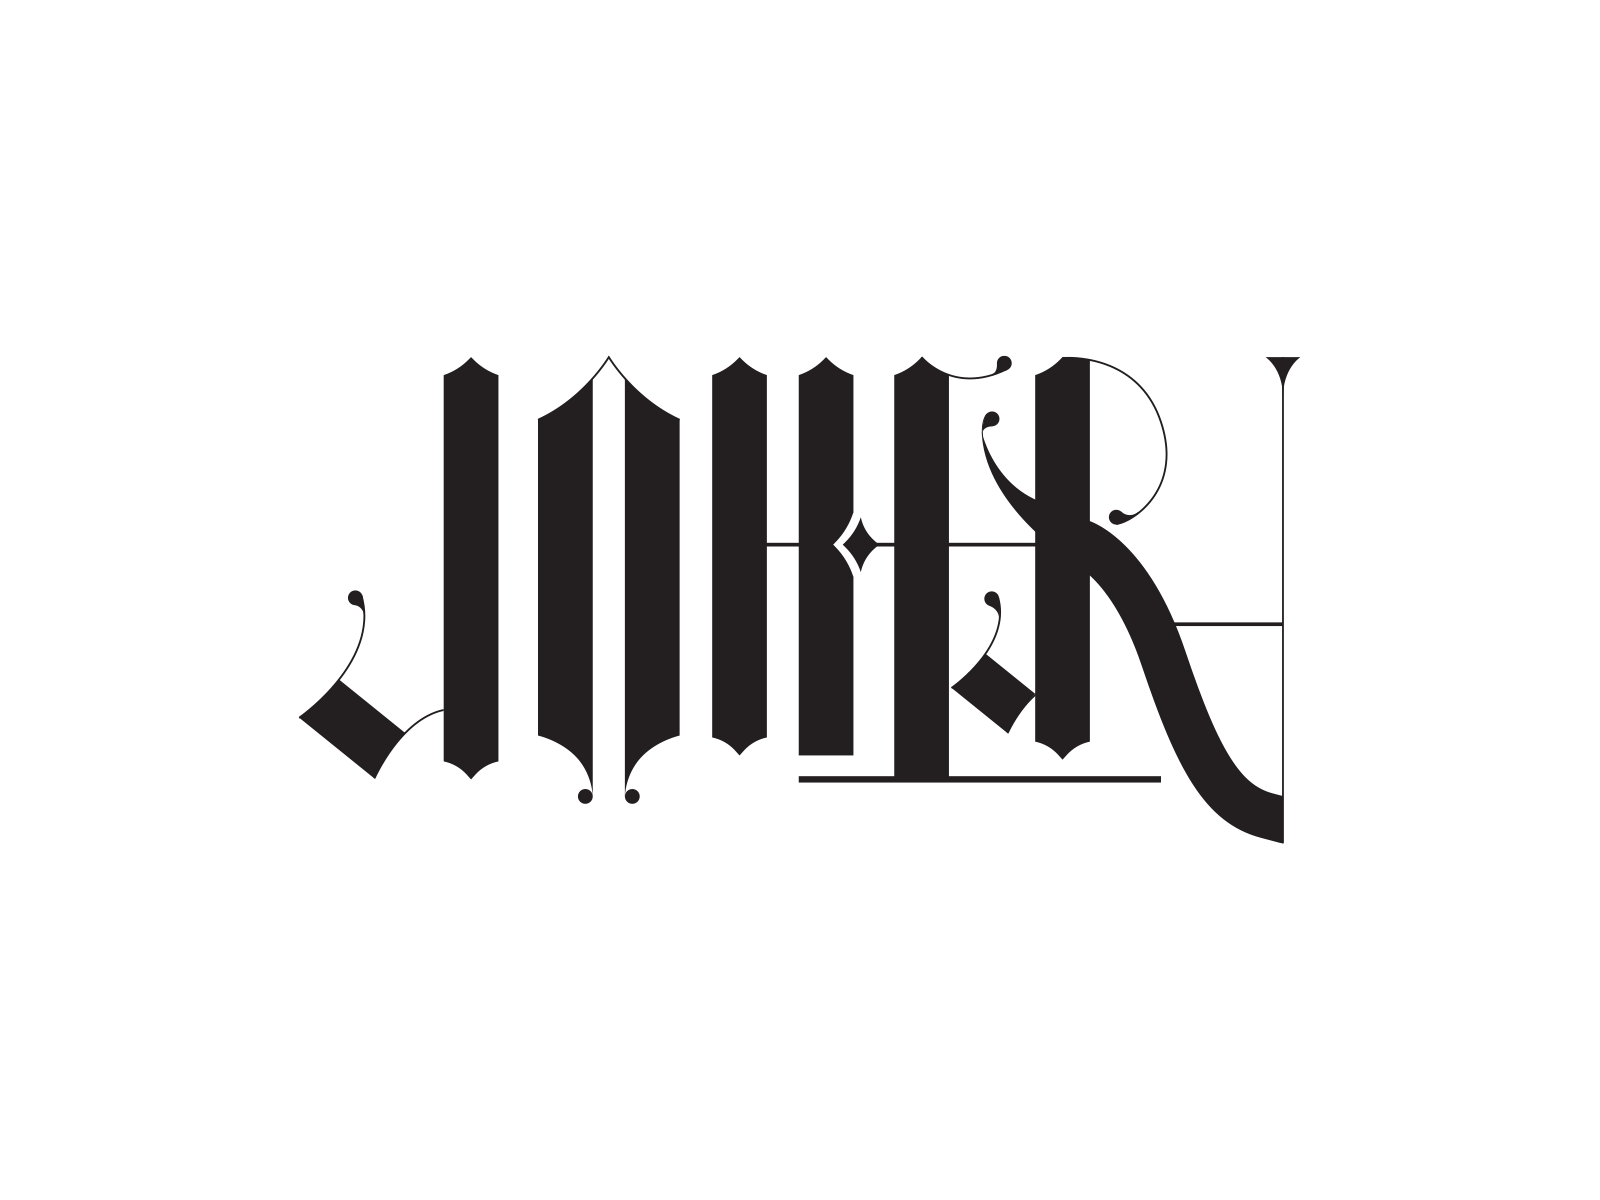 Joker / Arthur ambigram ambigram arthur branding design joker logo monogram typography